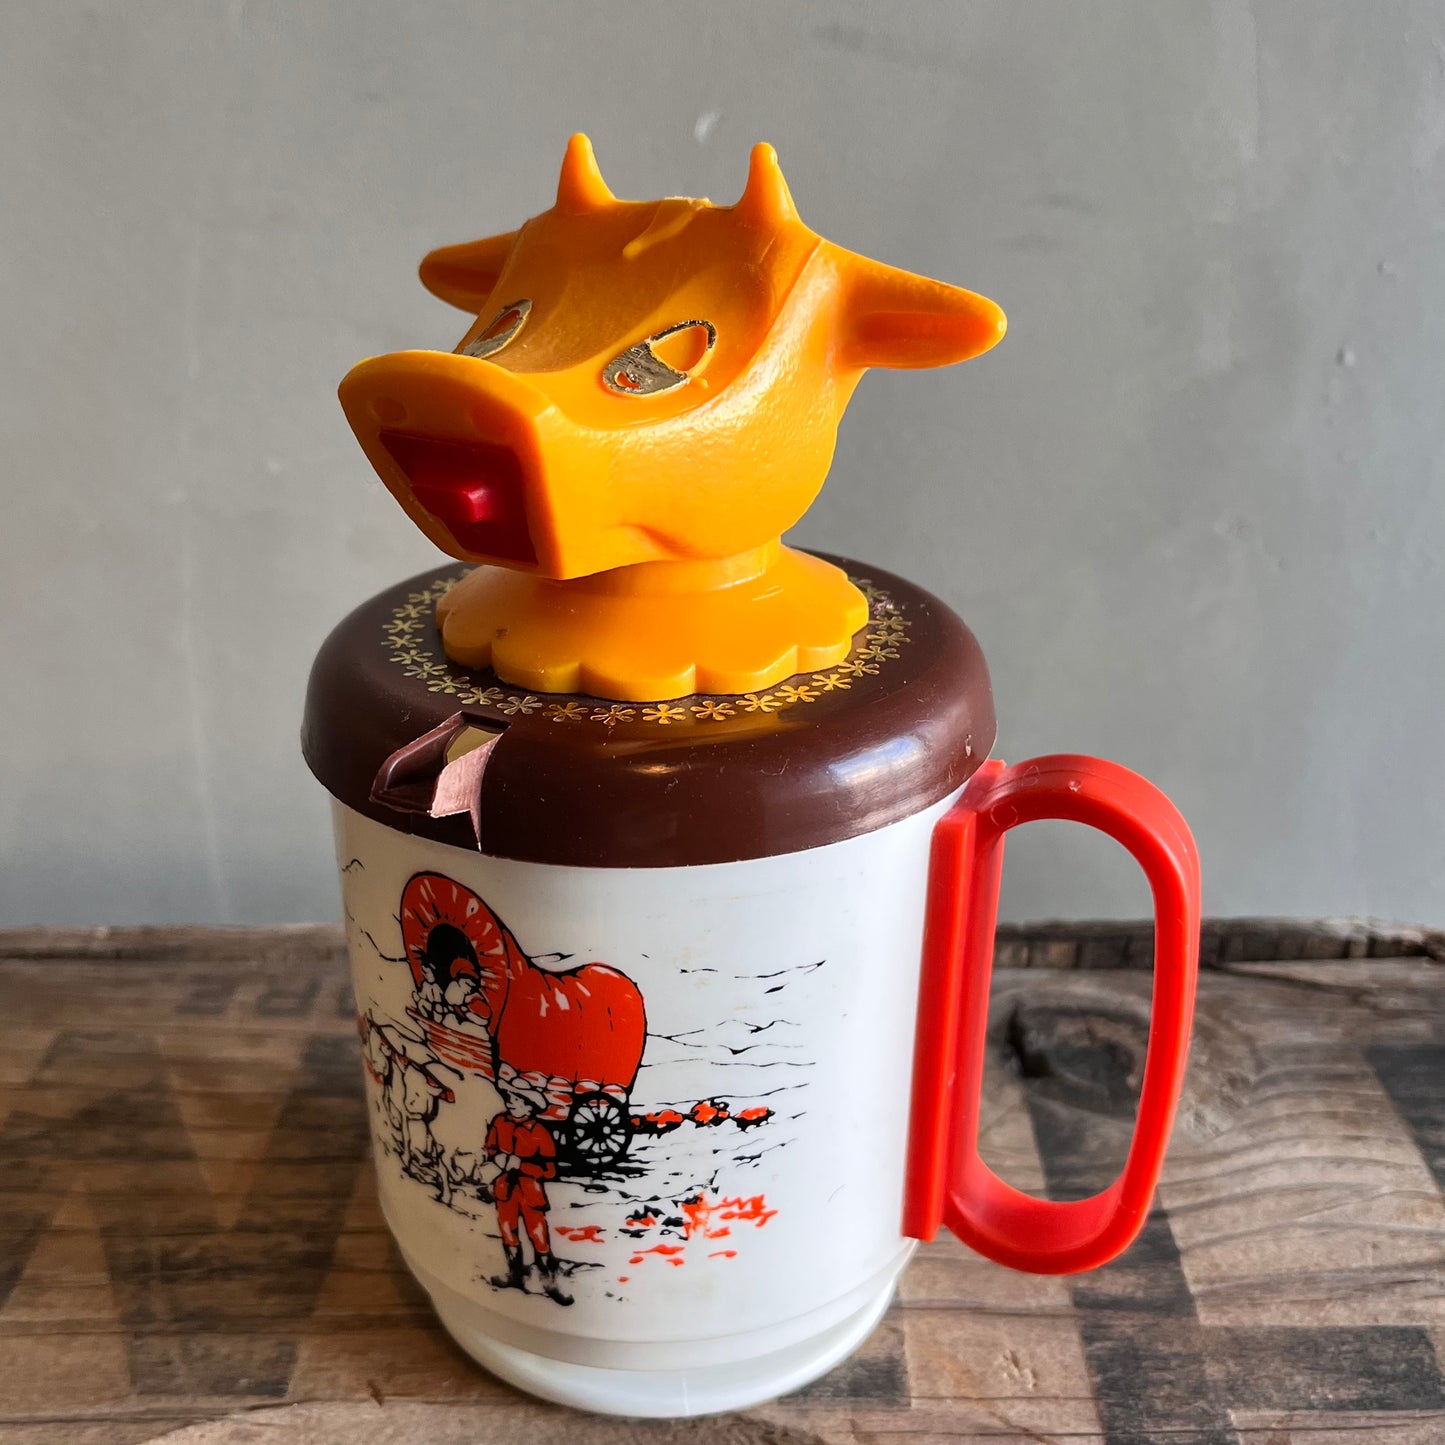 【USA vintage】WHIRLEY Moo-Cow Creamer and Kid’s mug UTAH